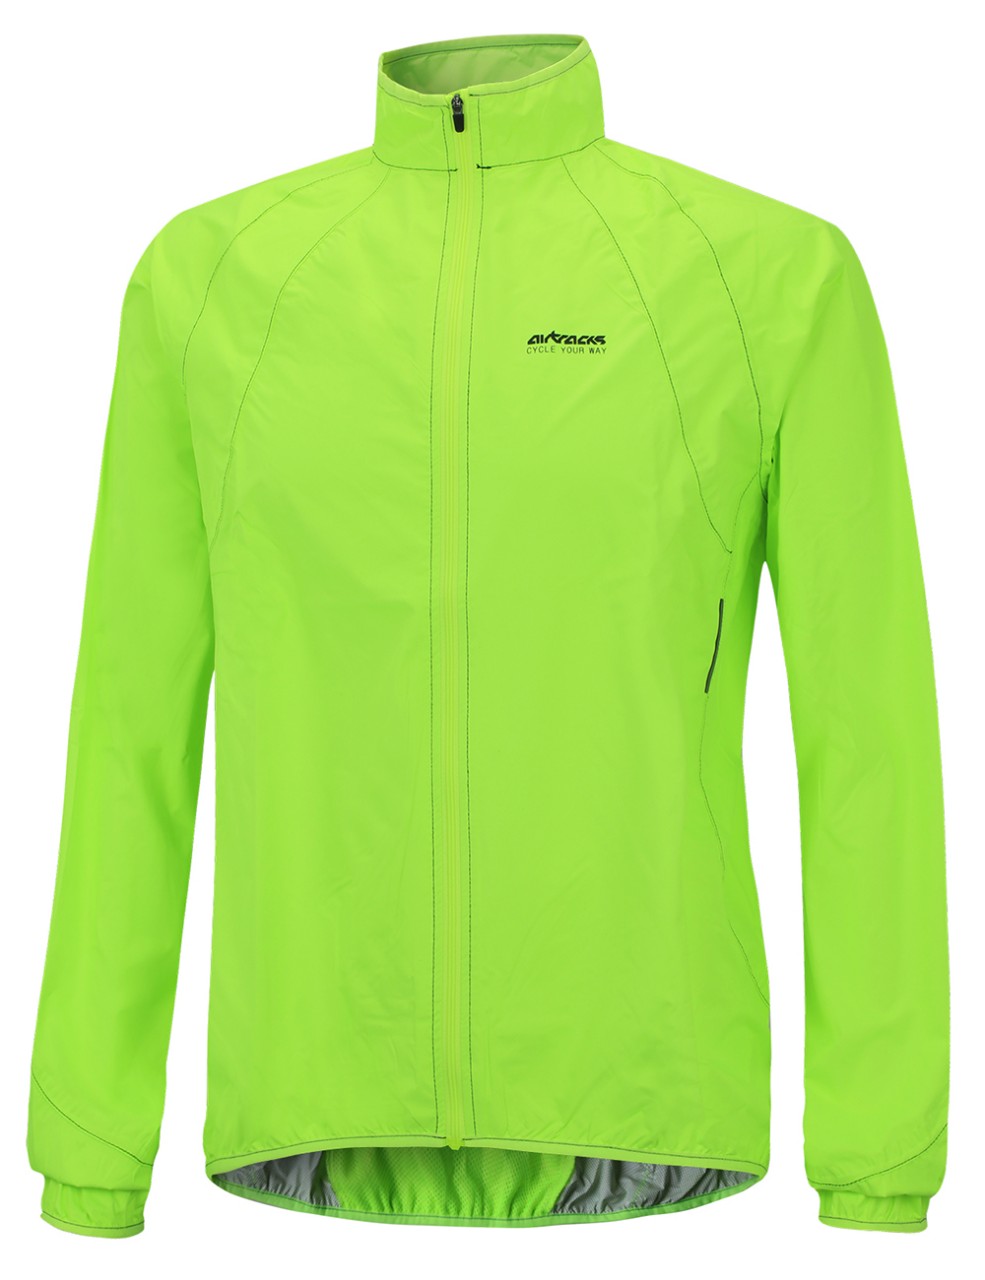 NUCKILY Herren Fahrradjacke Leichte Anti-UV Jersey Winddicht Wasserabweisend Mantel Laufen Windbreaker Regenmantel Outdoor Sportbekleidung